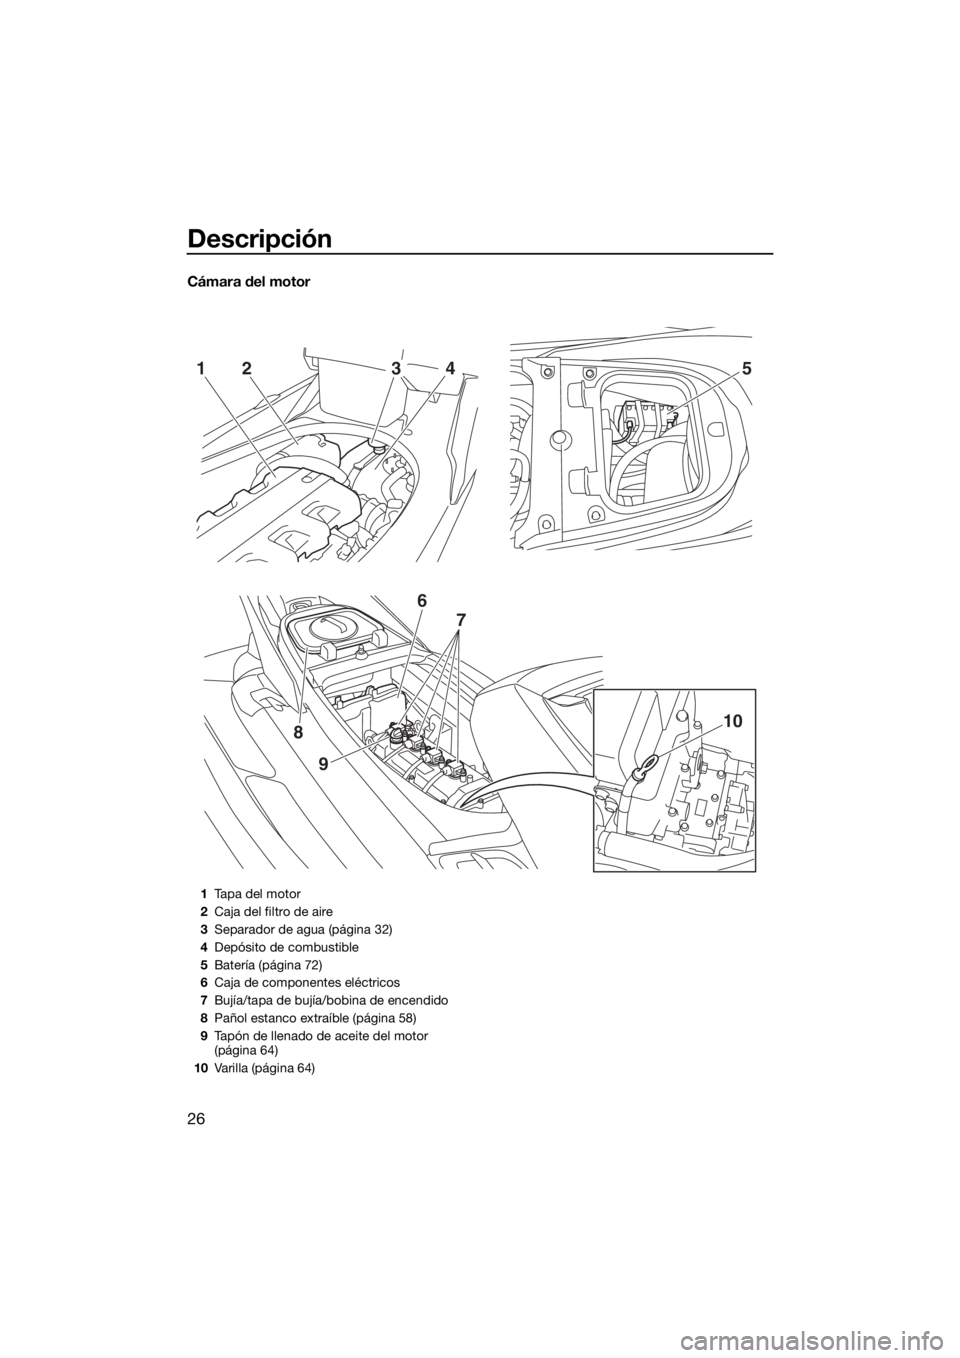 YAMAHA FX HO CRUISER 2015  Manuale de Empleo (in Spanish) Descripción
26
Cámara del motor
52143
9
8
6
7
10
1Tapa del motor
2Caja del filtro de aire
3Separador de agua (página 32)
4Depósito de combustible
5Batería (página 72)
6Caja de componentes eléct